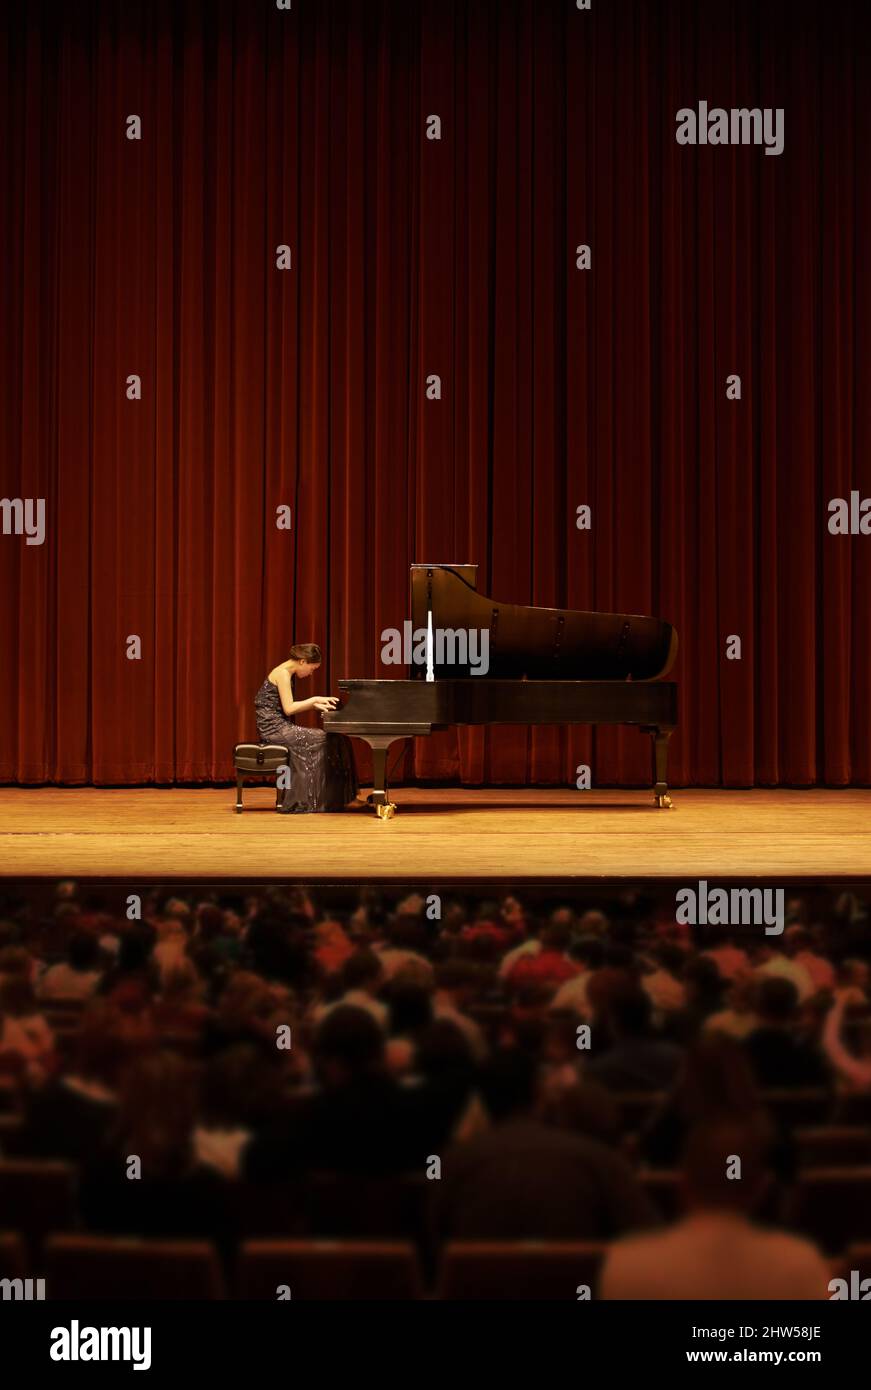 Jouer pour la foule. Prise de vue d'une jeune femme jouant du piano lors d'un concert musical. Banque D'Images